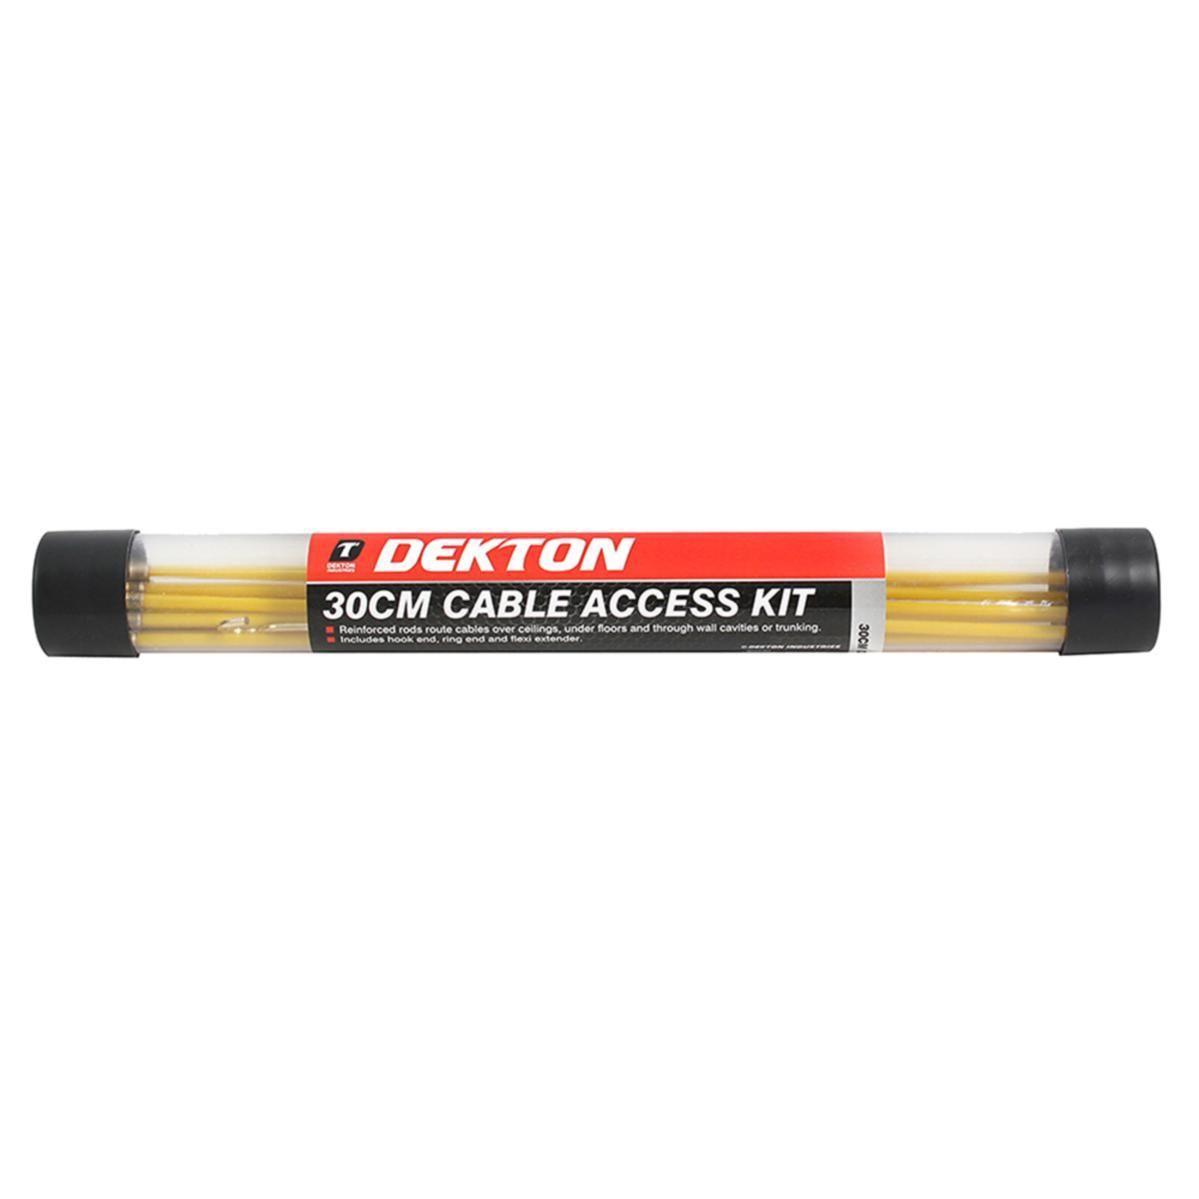 Dekton Cable Access Kit | 30cm | 10 Piece - Choice Stores